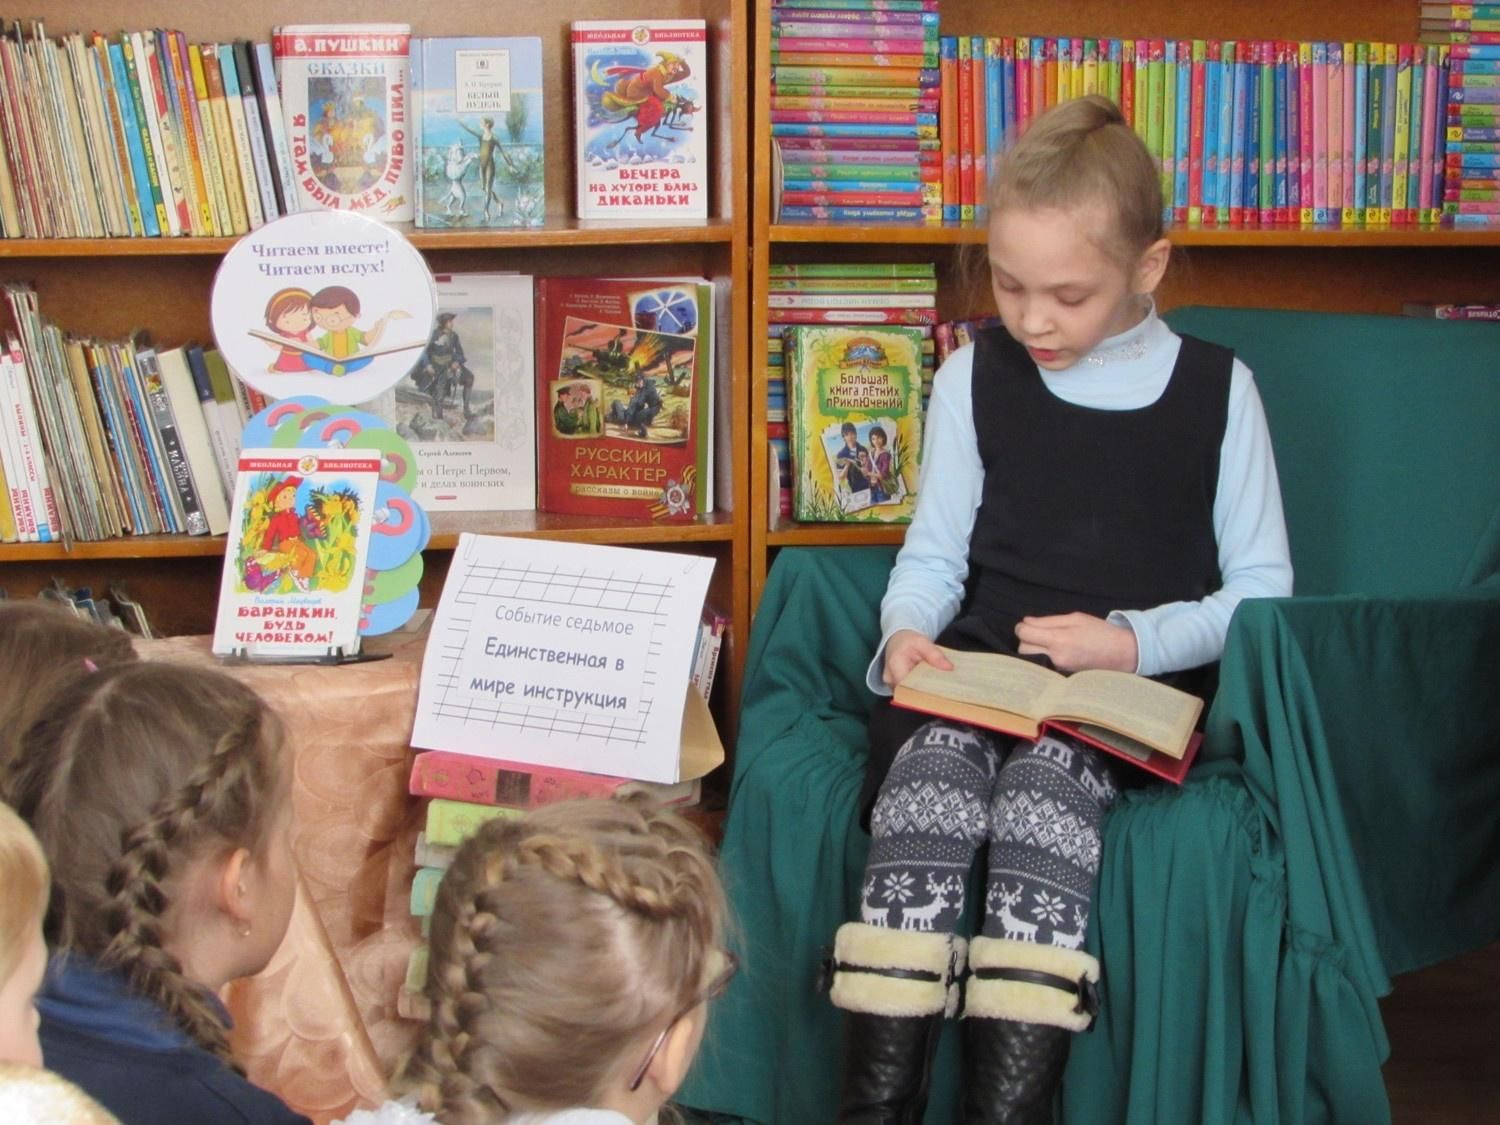 Рассказы читать вслух. Посиделки для детей в библиотеке. Читаем вместе. День чтения вслух. Литературные посиделки в библиотеке.